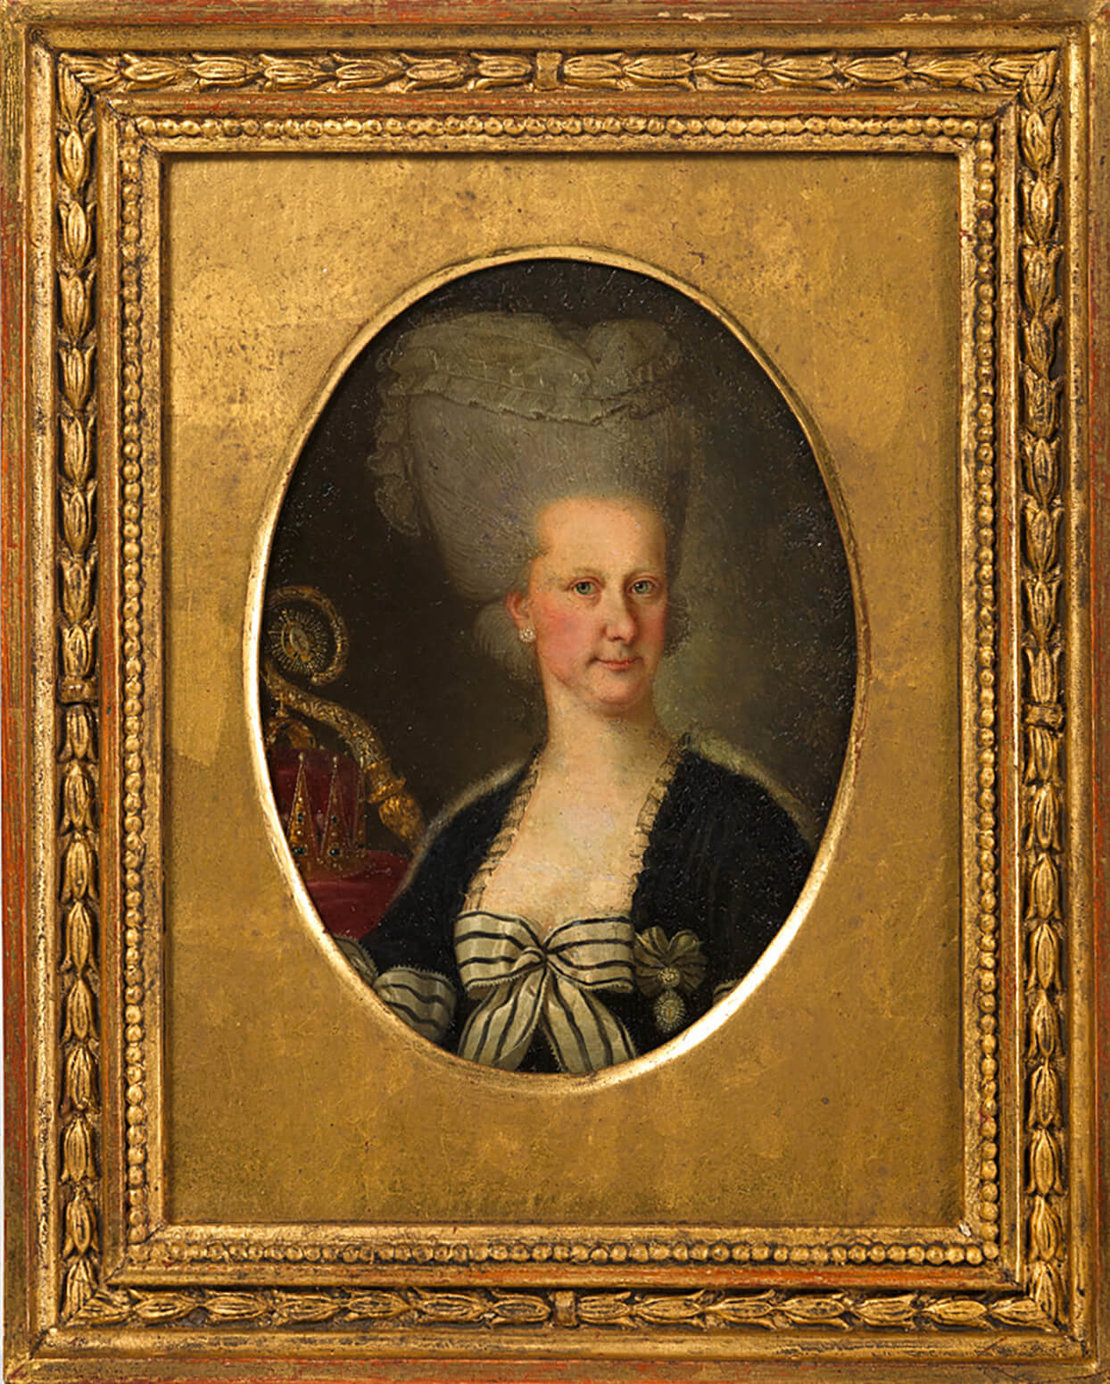 Maria Elisabeth, Tochter von Kaiserin Maria Theresia, Erzherzogin von Österreich. Bei diesem wie bei anderen Porträts wurden freilich die Pockennarben der Betroffenen nicht dargestellt. Undatiertes Aquarell, Wien Museum 